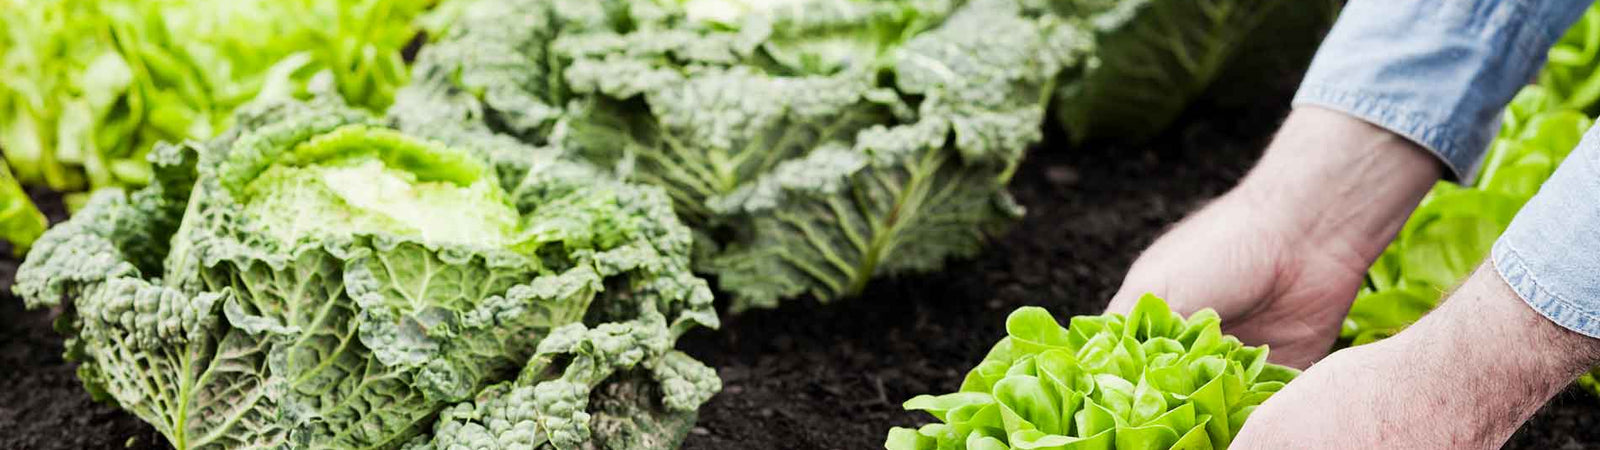 soil health principles vegetable garden